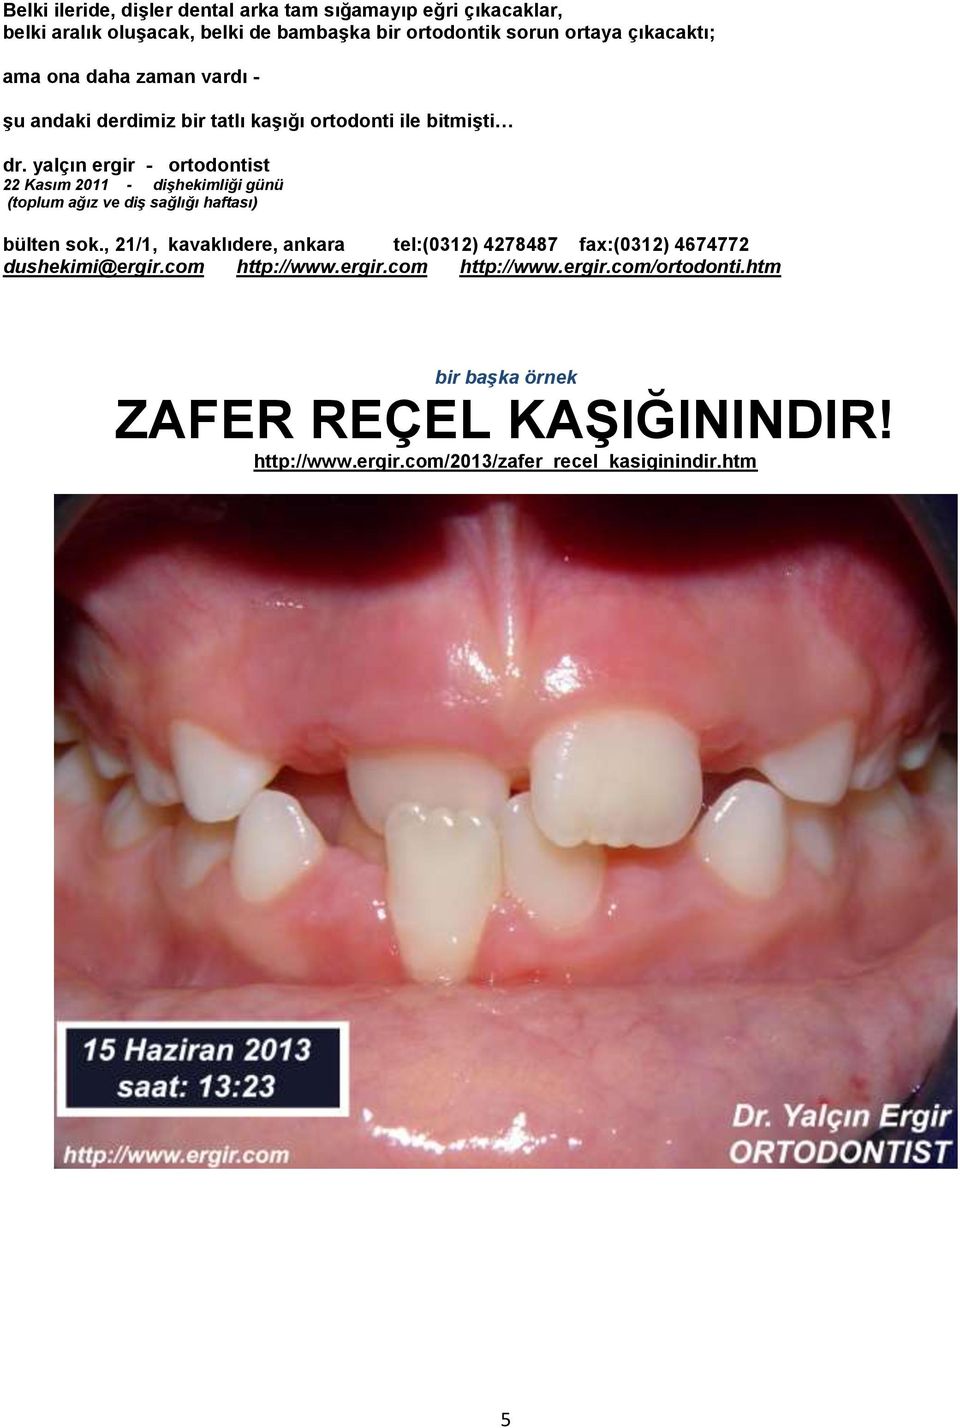 yalçın ergir - ortodontist 22 Kasım 2011 - dişhekimliği günü (toplum ağız ve diş sağlığı haftası) bülten sok.